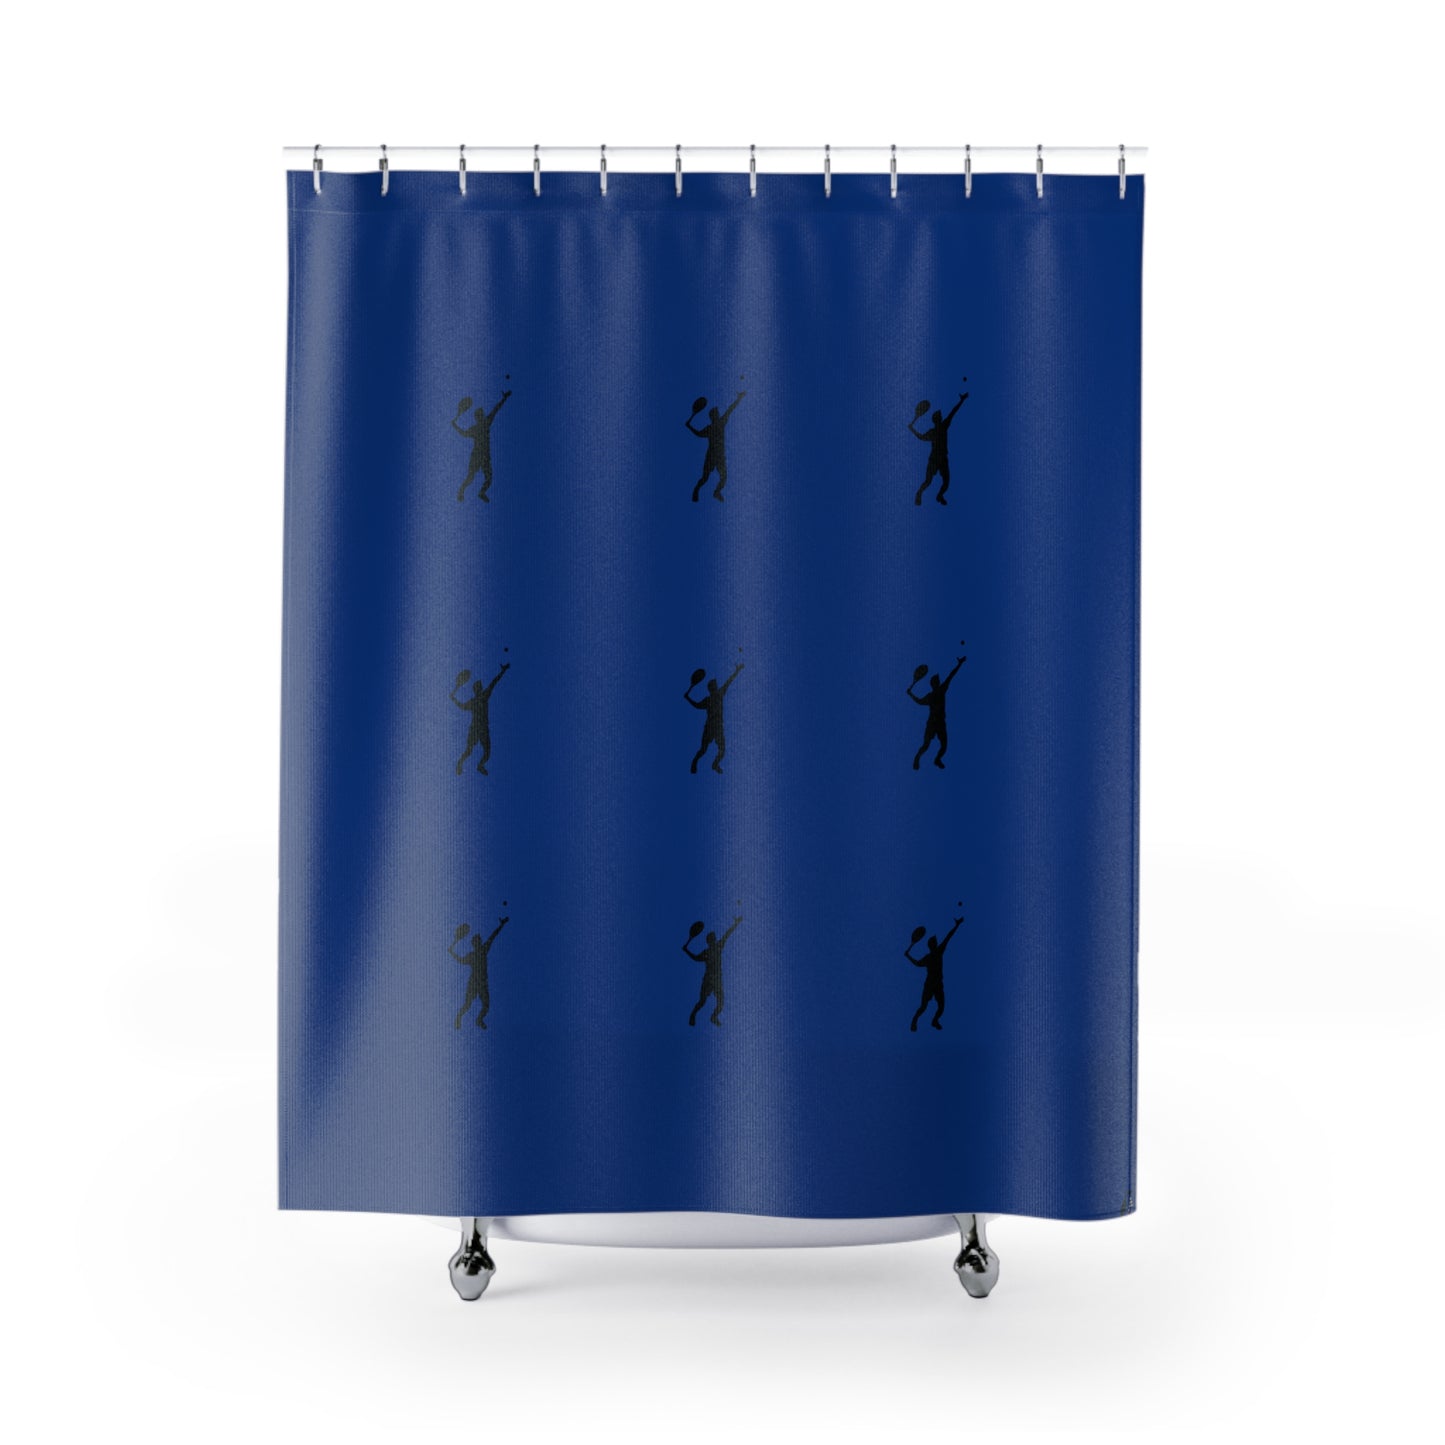 Shower Curtains: #2 Tennis Dark Blue